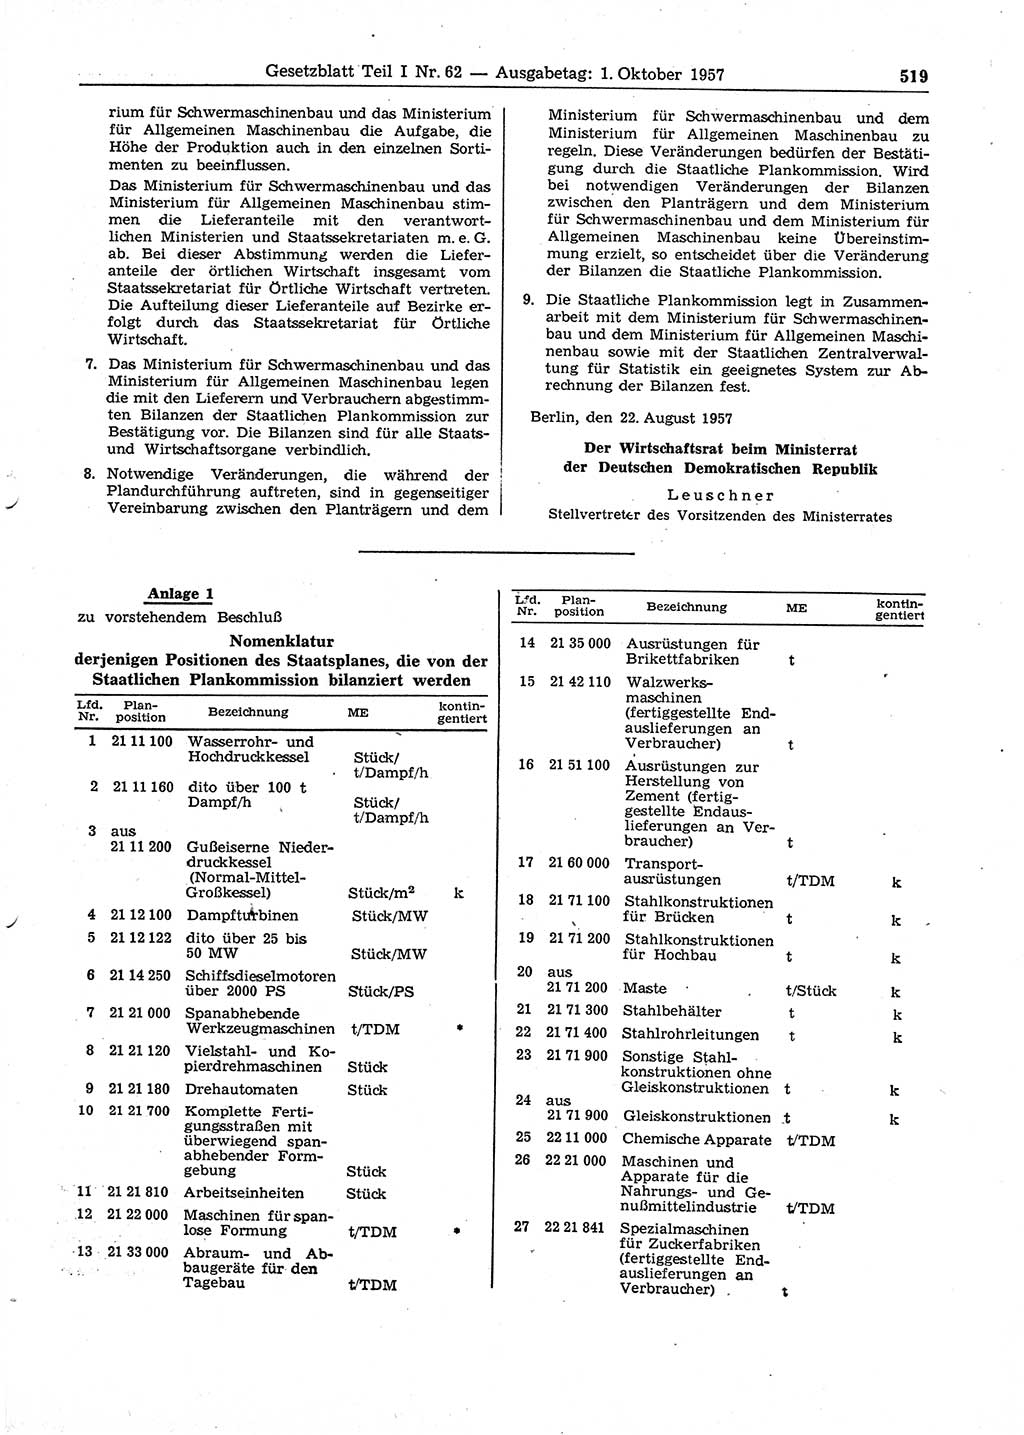 Gesetzblatt (GBl.) der Deutschen Demokratischen Republik (DDR) Teil Ⅰ 1957, Seite 519 (GBl. DDR Ⅰ 1957, S. 519)